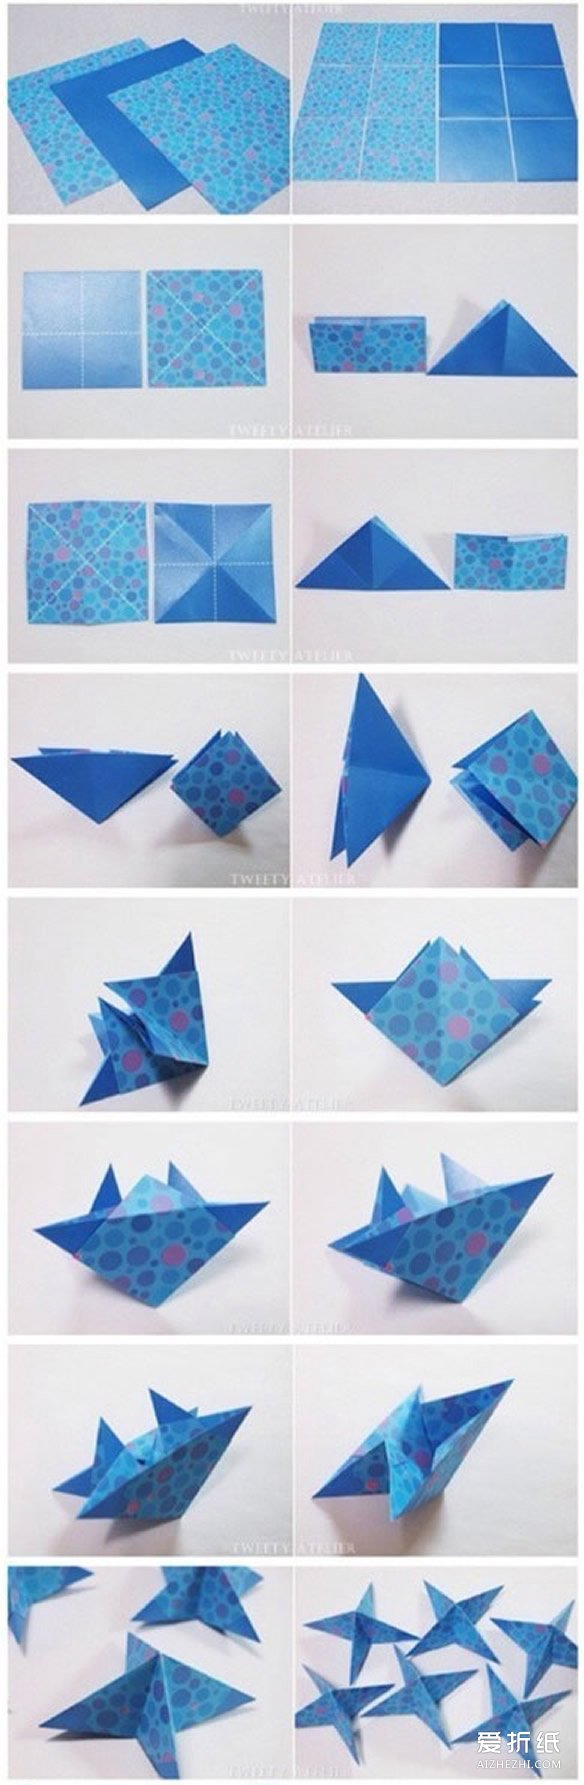 折纸立方体挂饰图解 立方体挂件的折法- www.aizhezhi.com